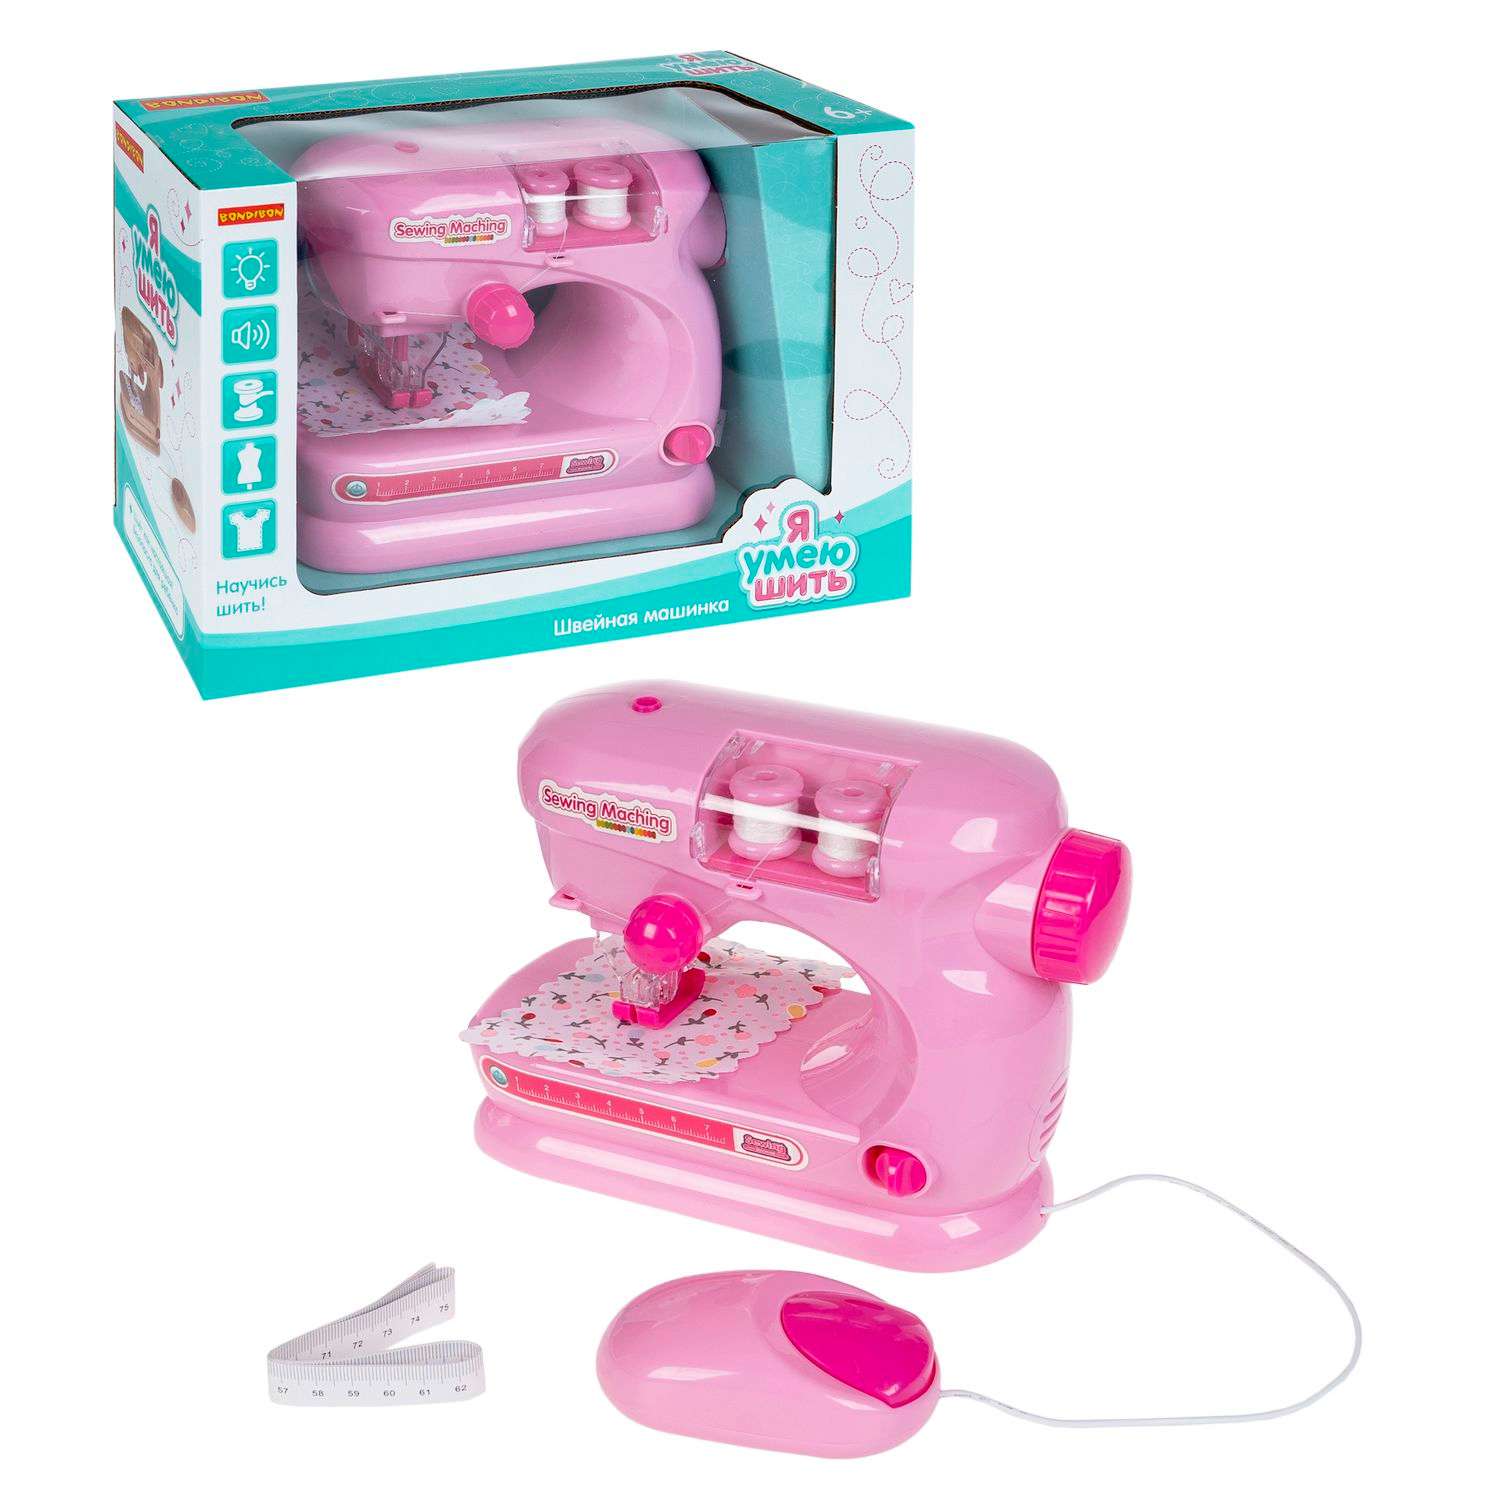 Игровой набор BONDIBON Я Умею Шить! Швейная машина со светом и звуком ярко-розового цвета - фото 5